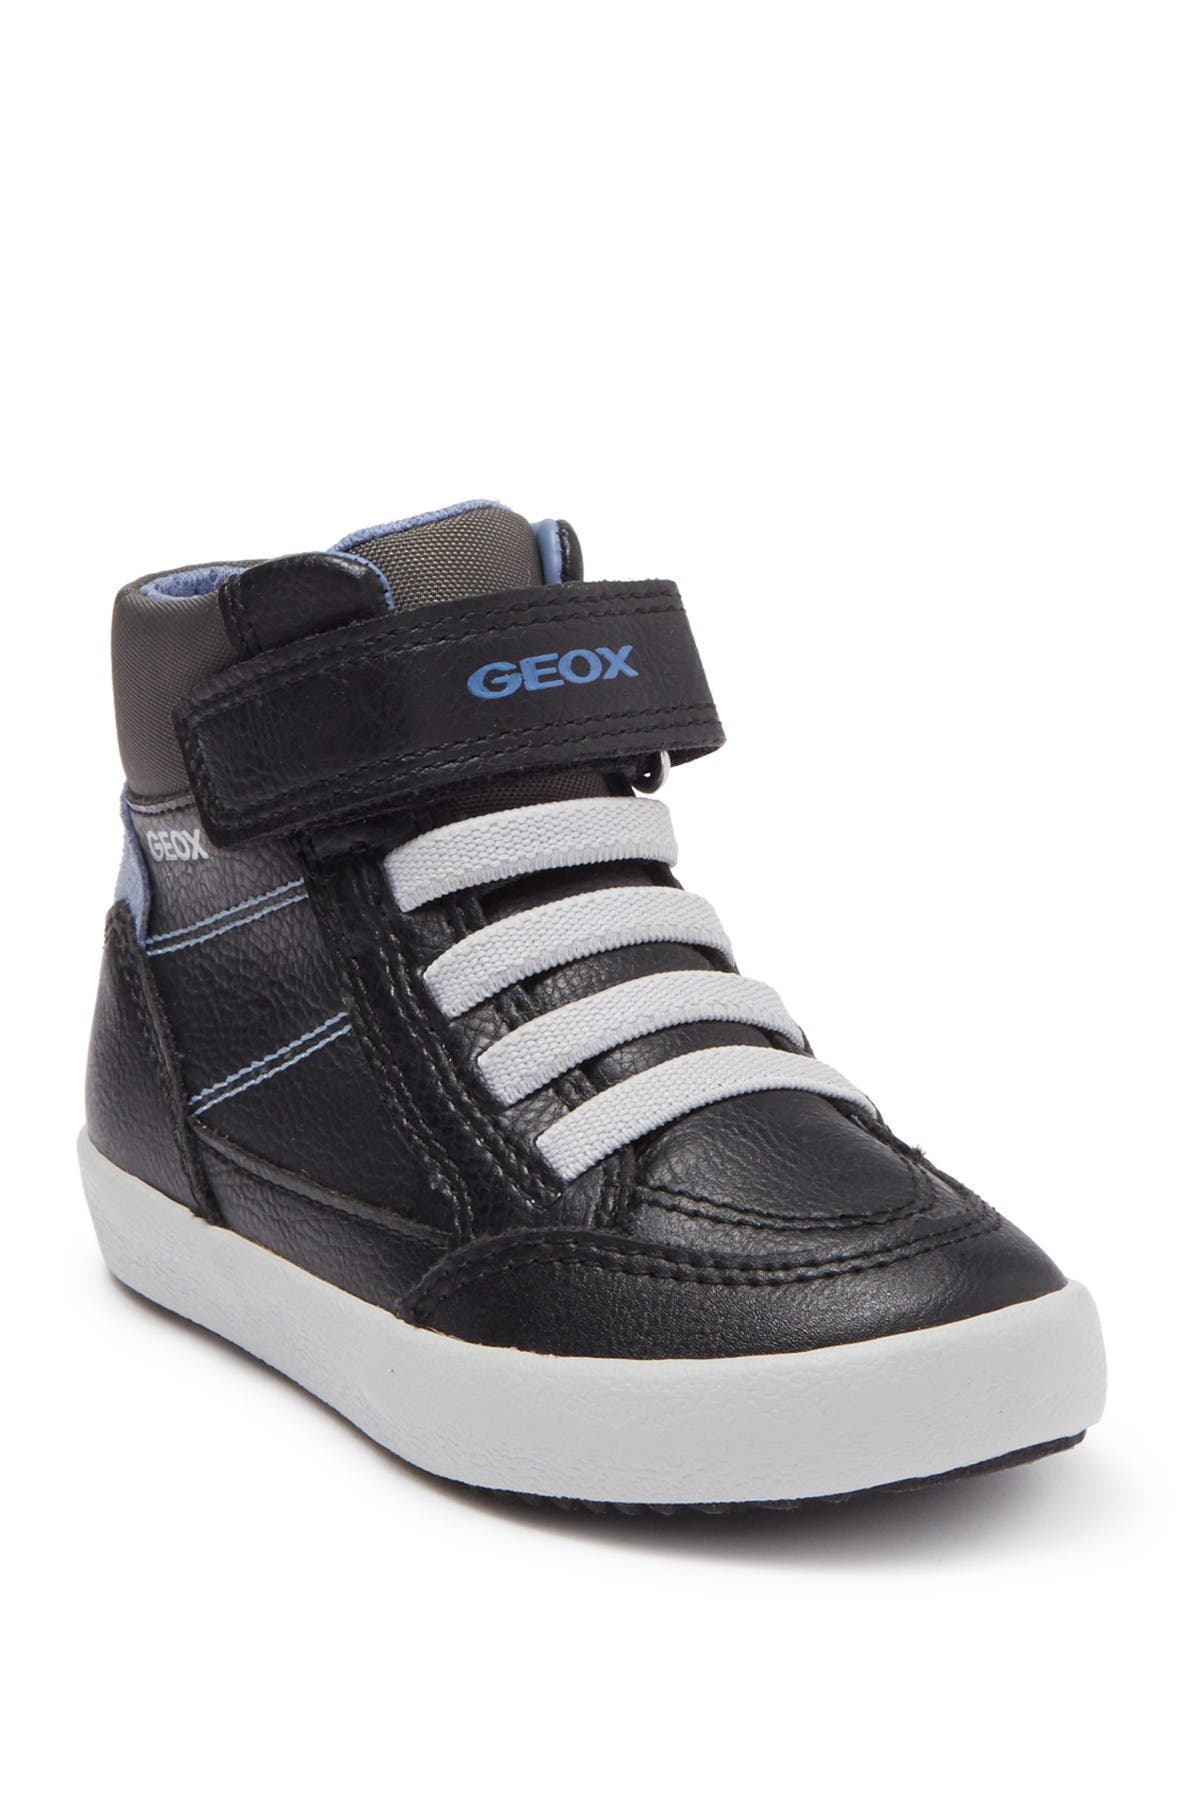 GEOX | Gisli Sneaker | Nordstrom Rack